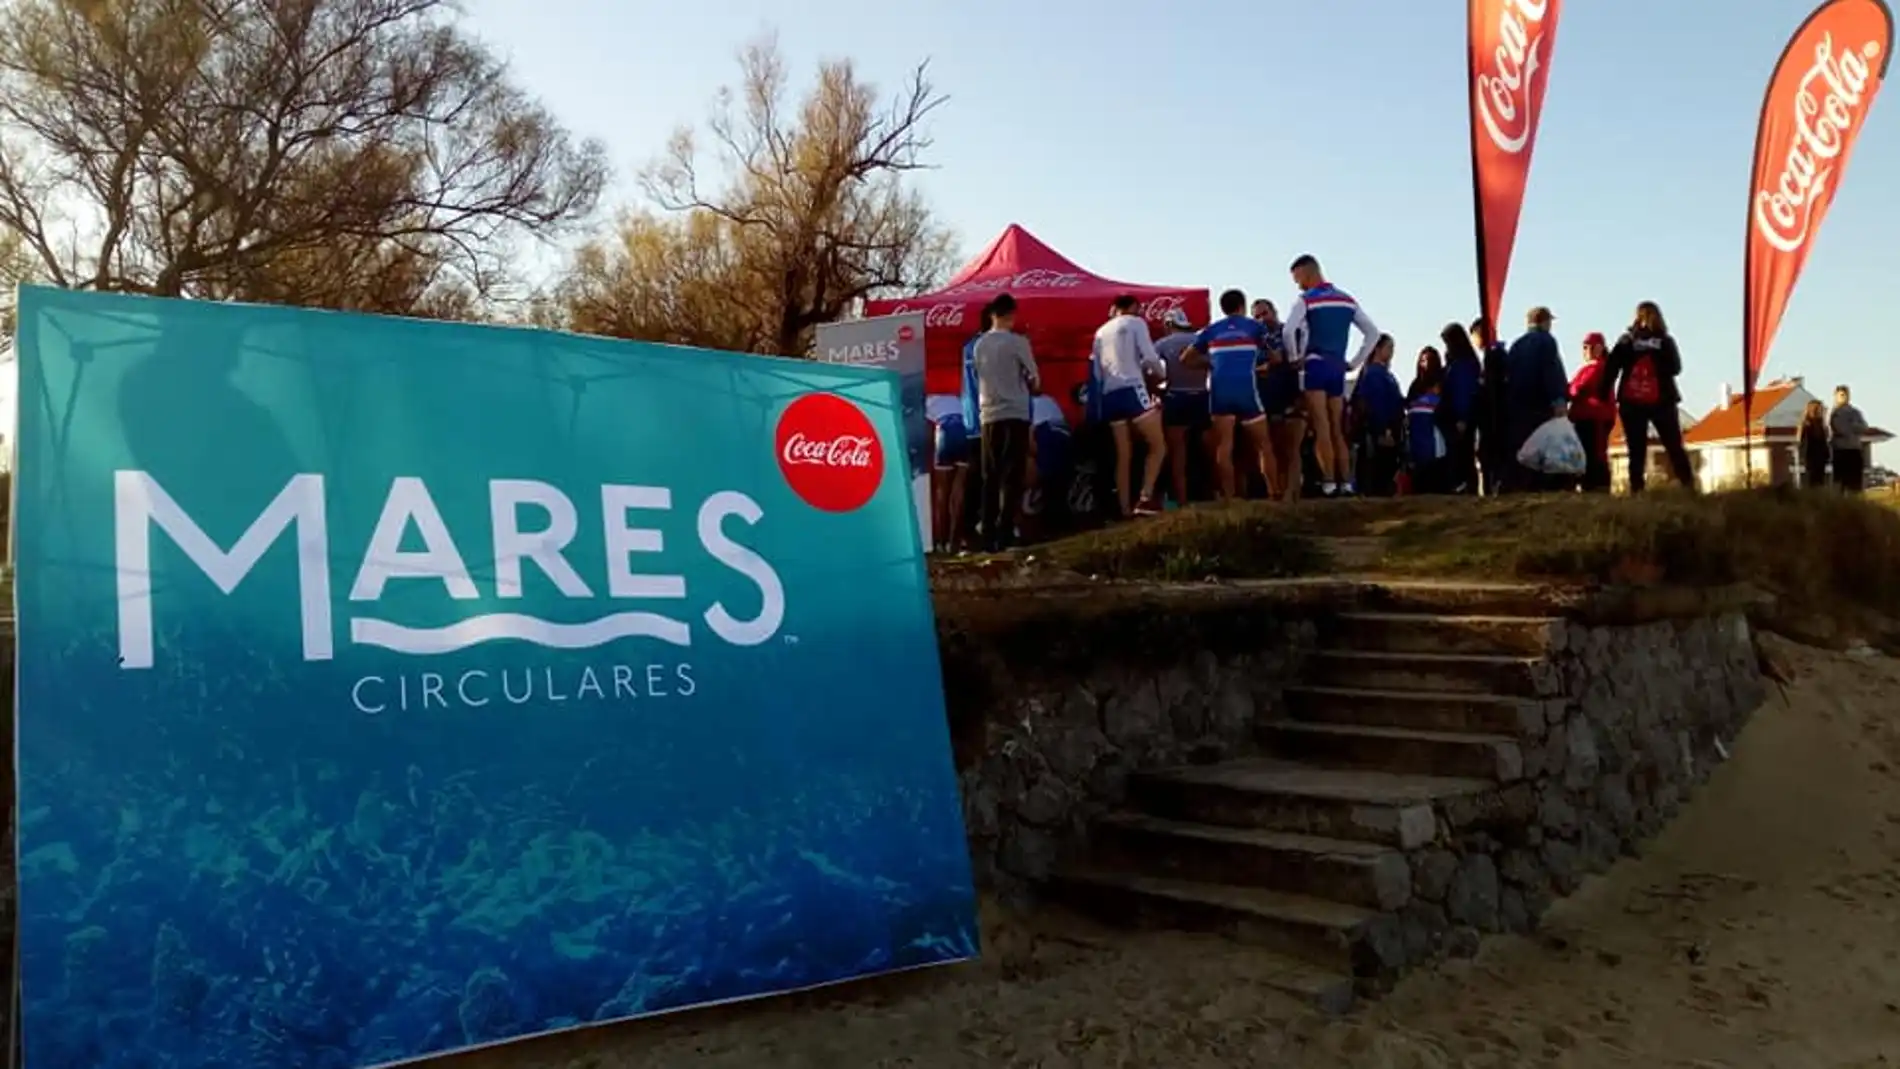 El proyecto 'Mares Circulares' de Coca-Cola llega un año más a Cantabria